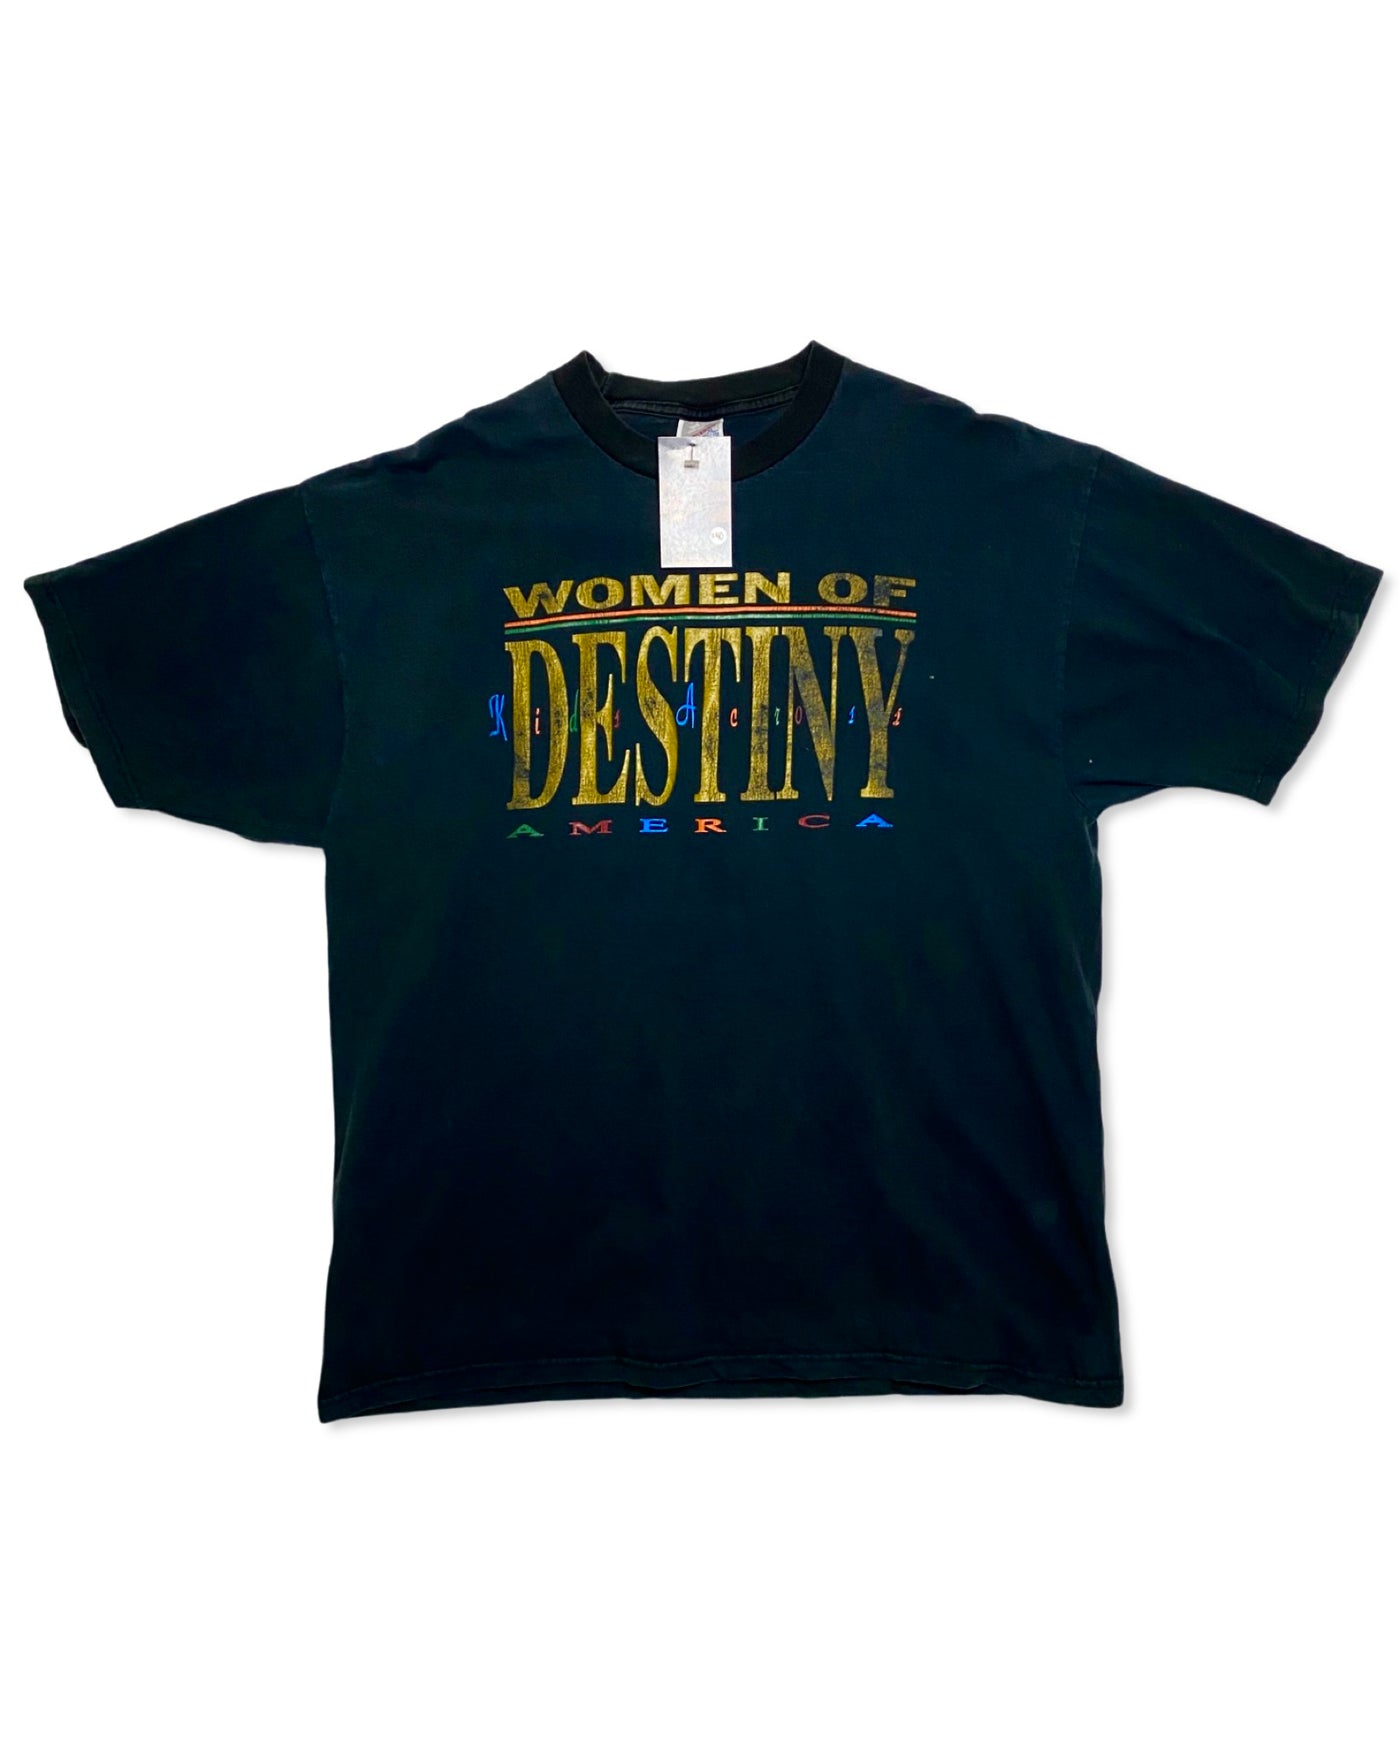 Vintage 90s Women of Destiny T-Shirt